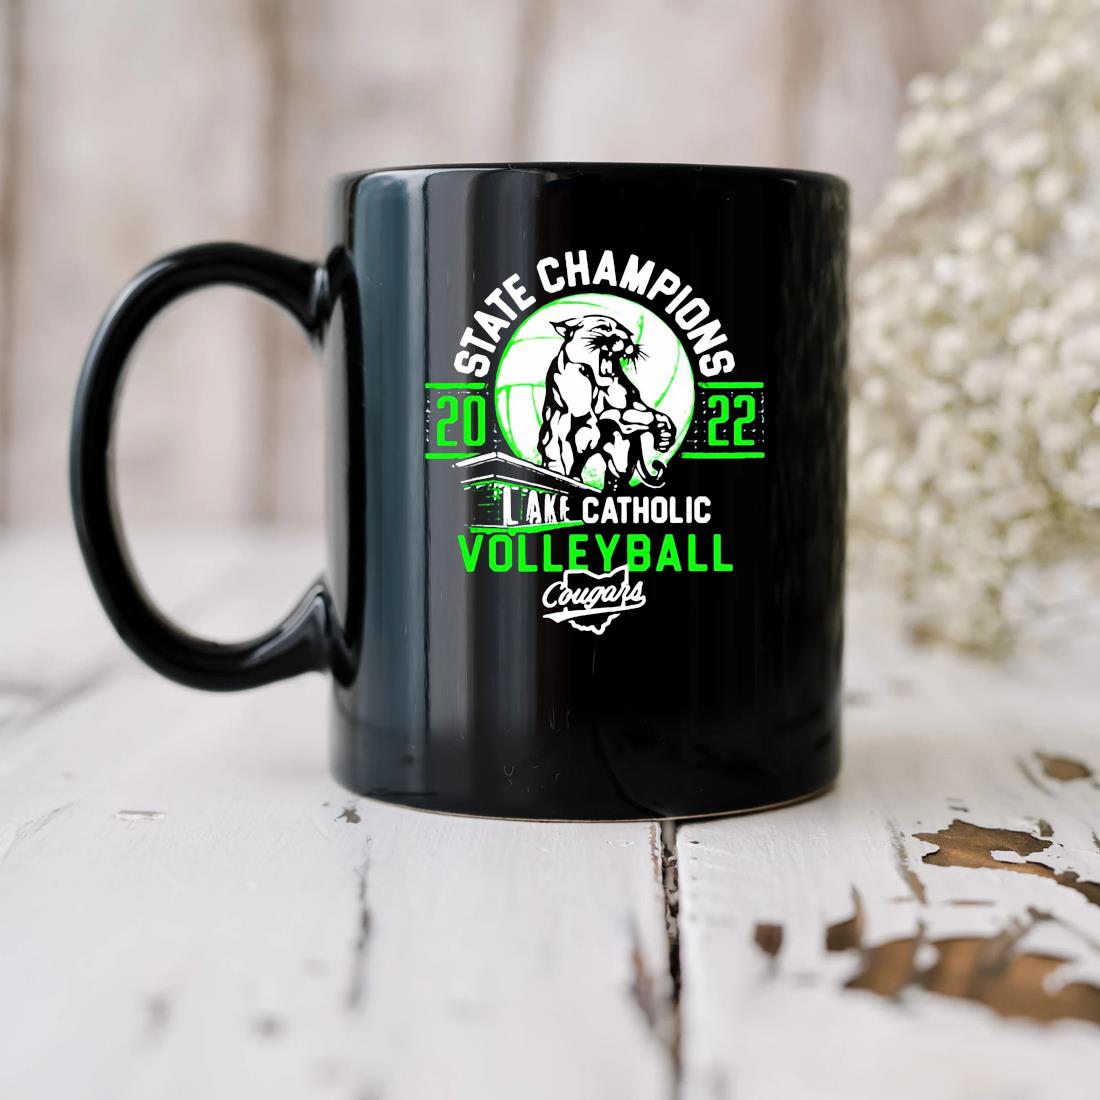 Lake Catholic State Volleyball Champions 2022 Mug